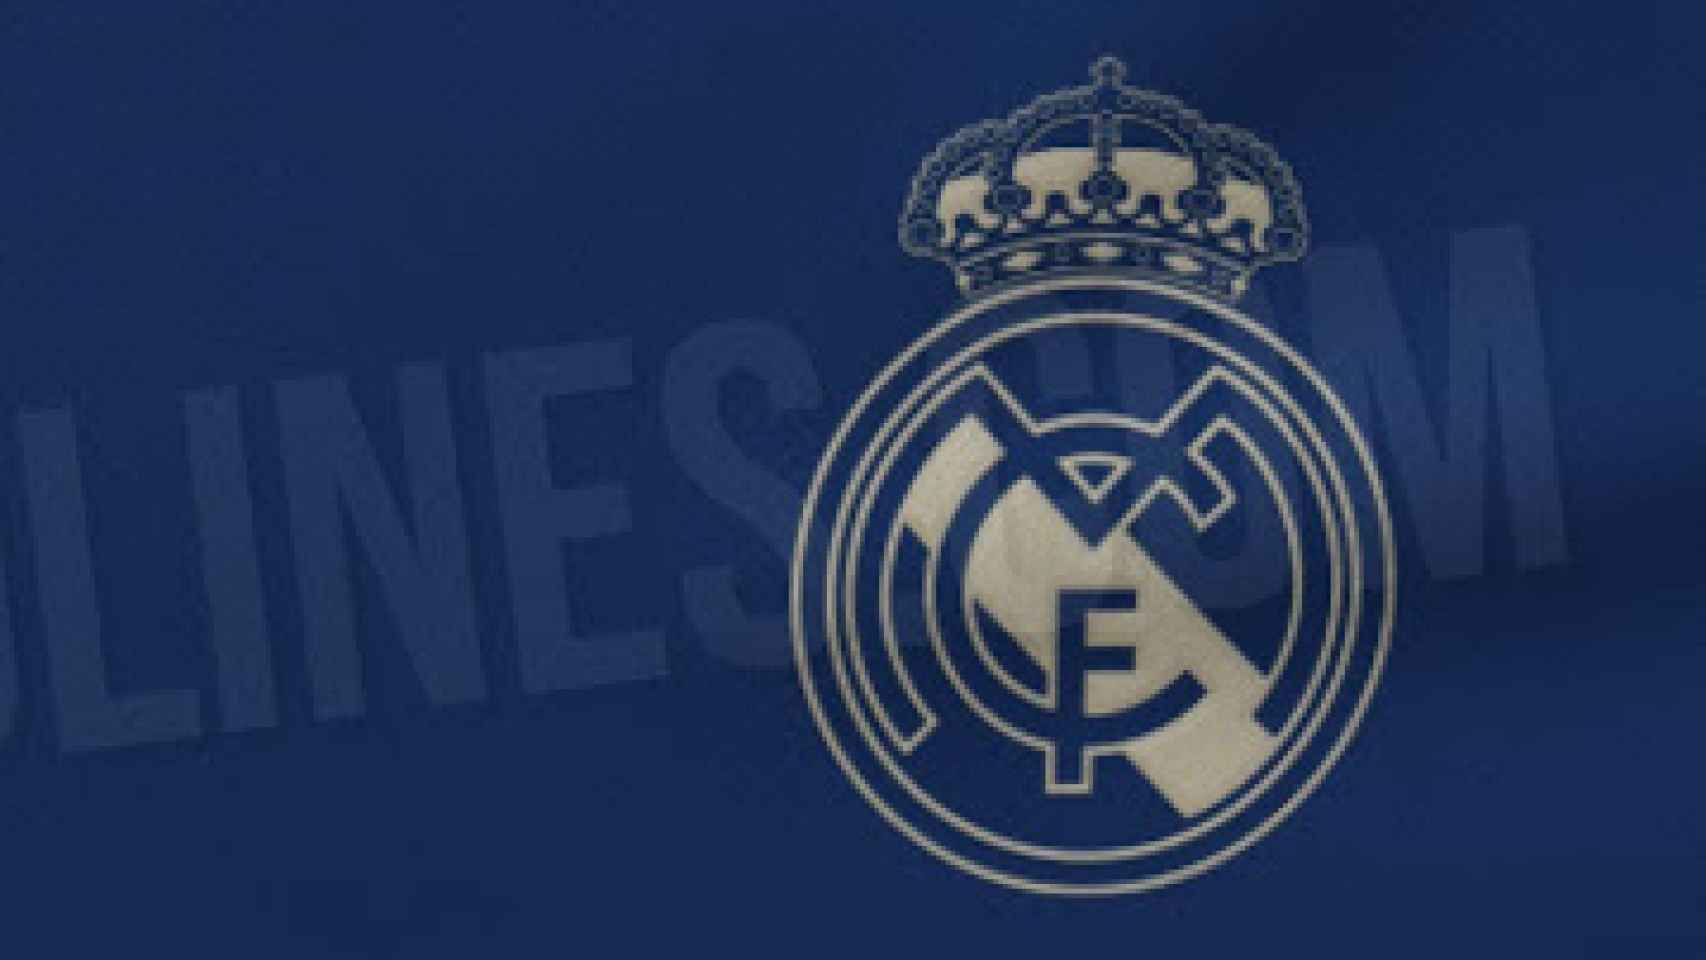 Real Madrid - 2ª equipación